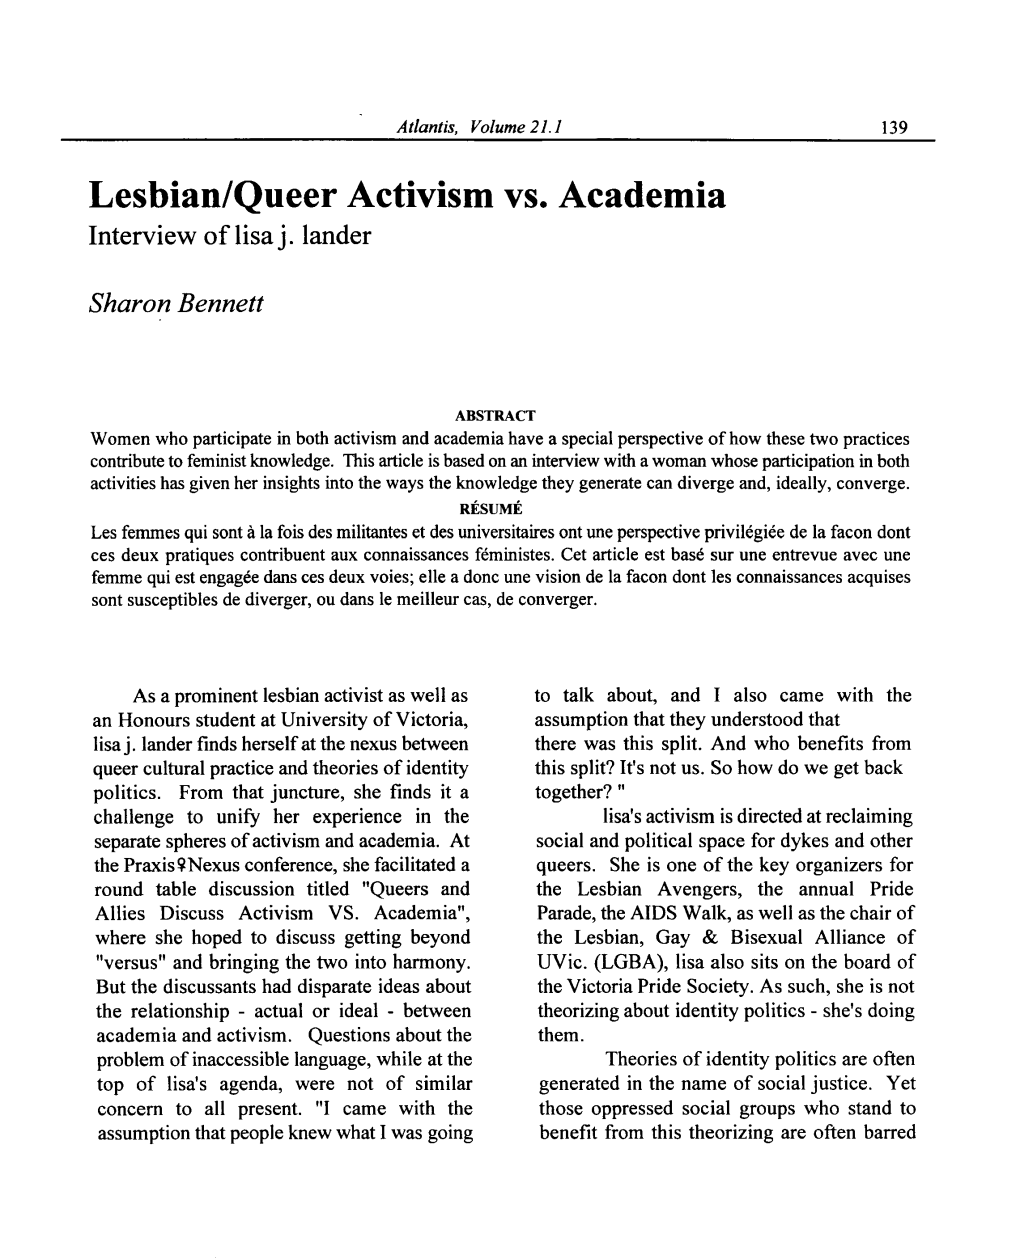 Lesbian/Queer Activism Vs. Academia